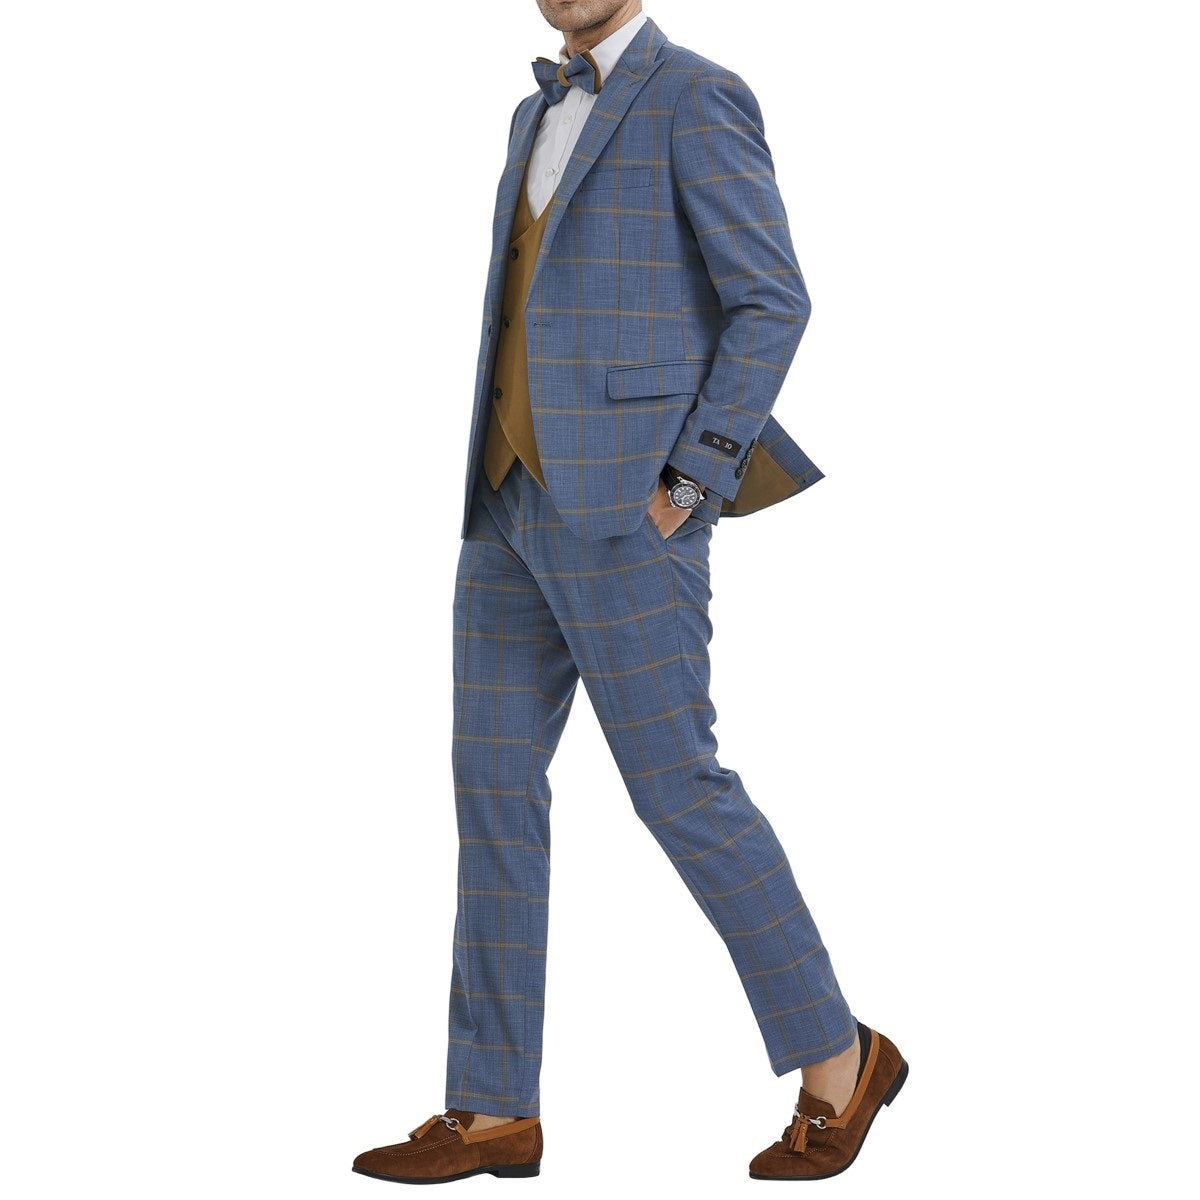 Traje Formal para Hombre TA-M351SK-02 - Formal Suit for Men